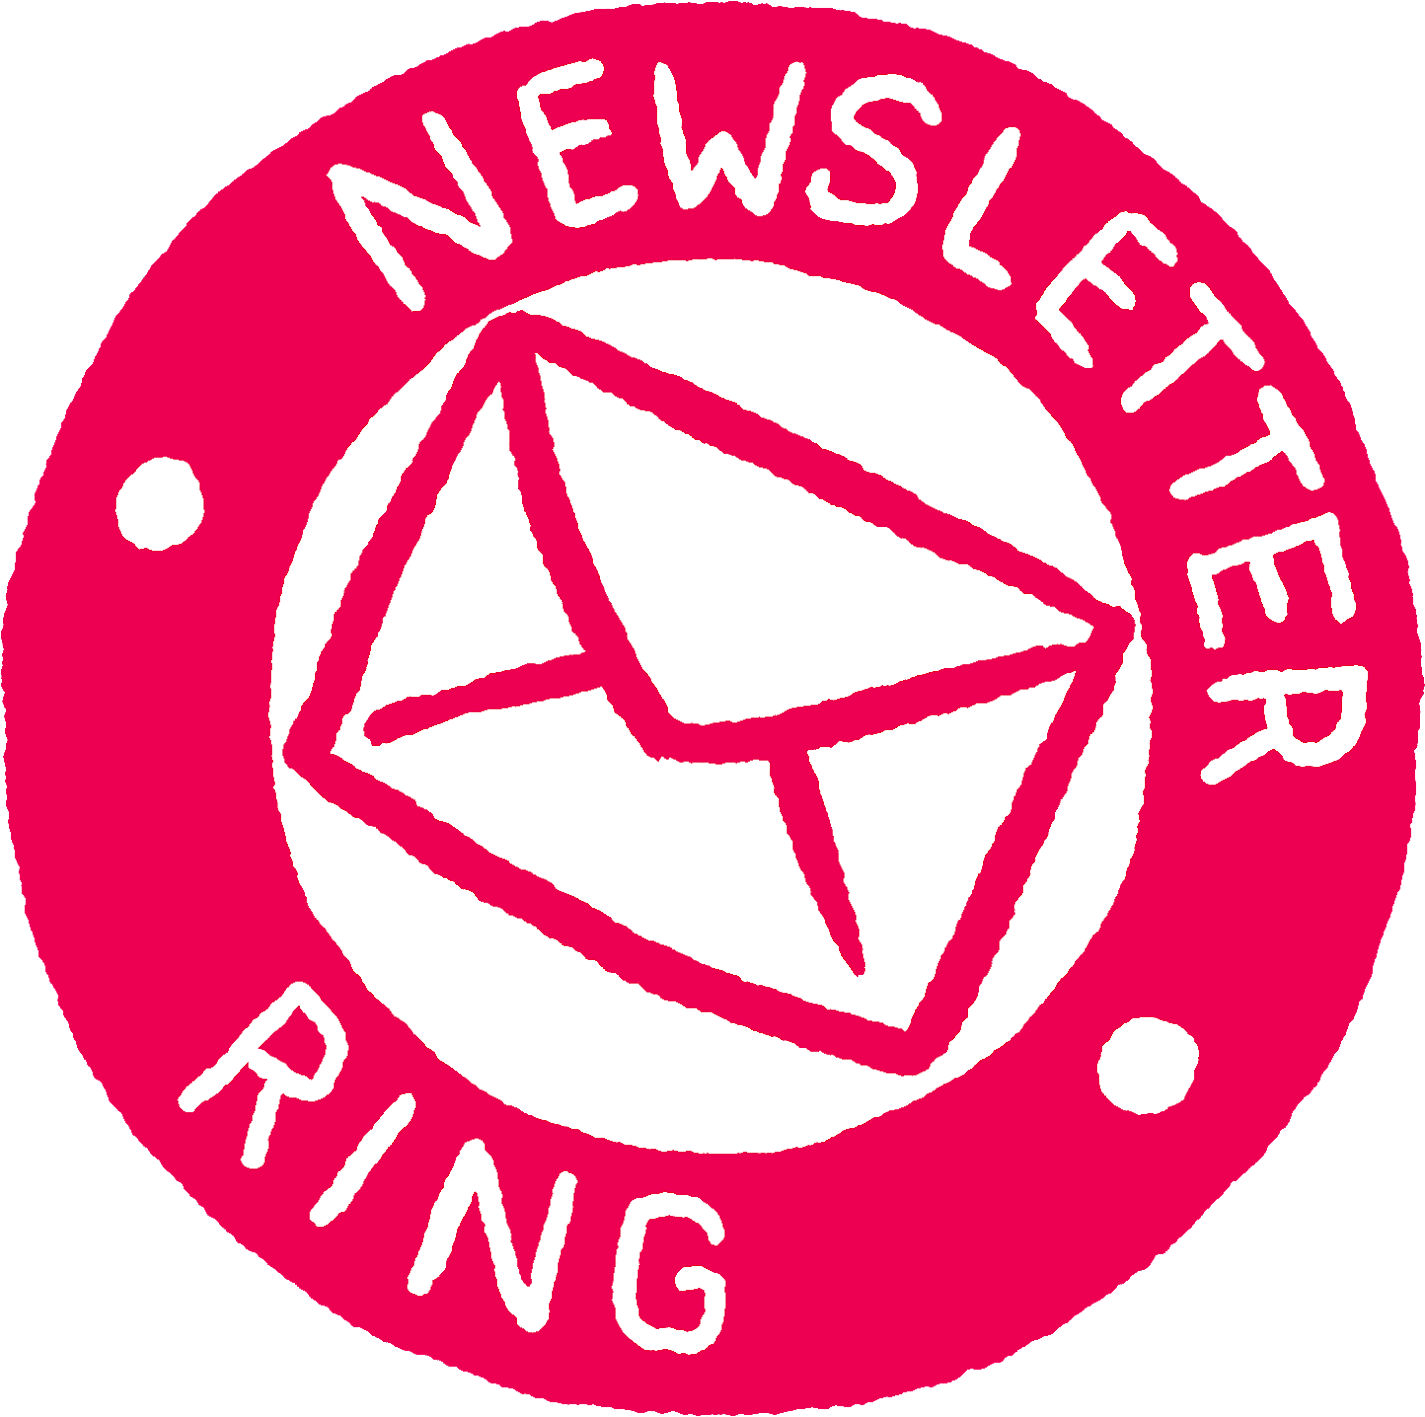 newsletter ring logo